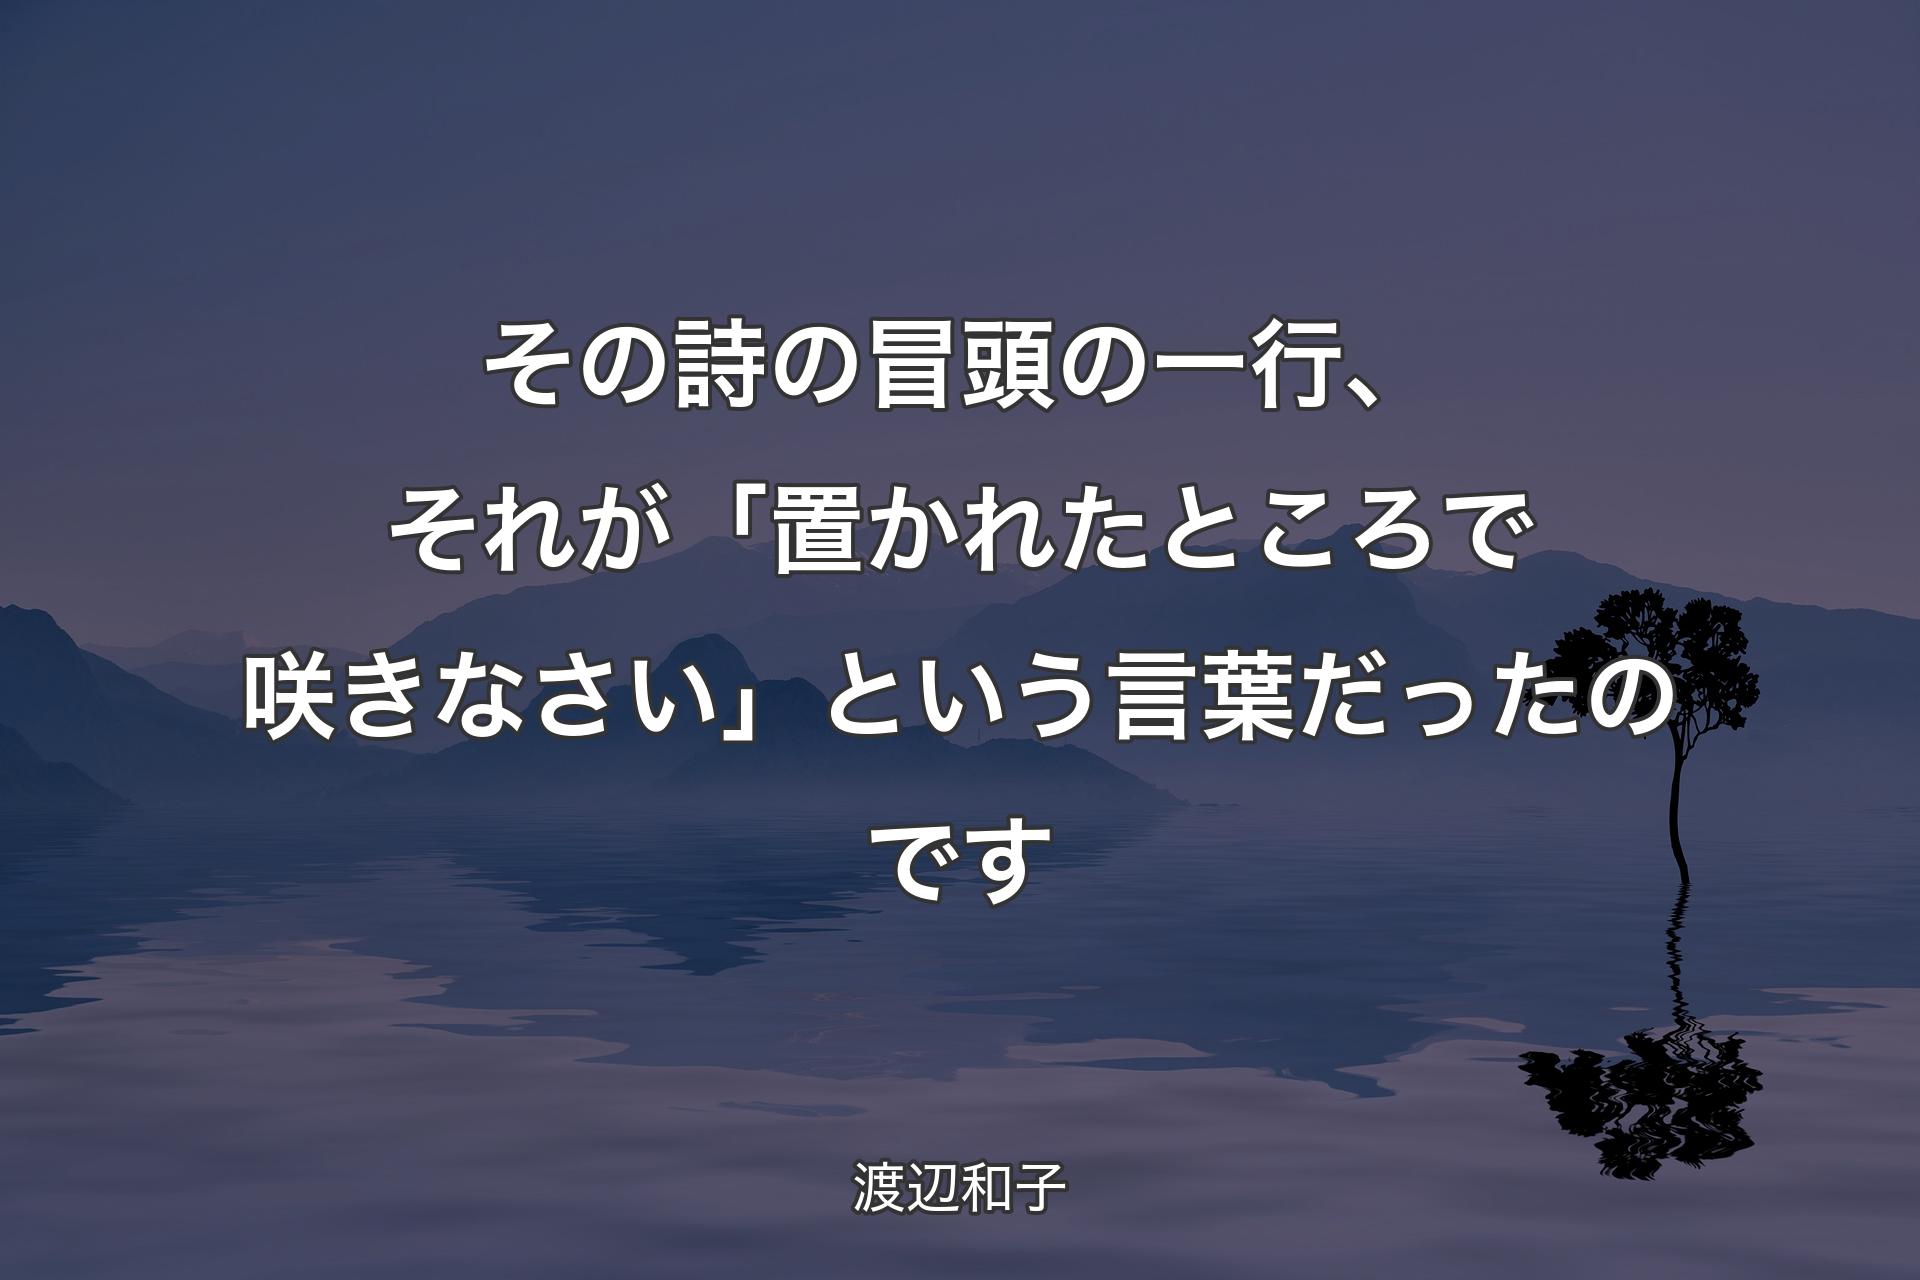 【背景4】その詩の冒頭の一行、それが「置かれたところで咲きなさい」という言葉だったのです - 渡辺和子